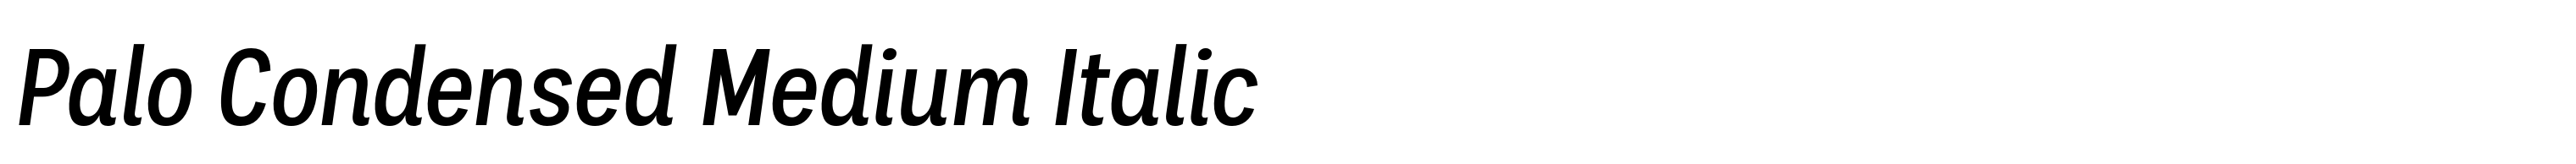 Palo Condensed Medium Italic